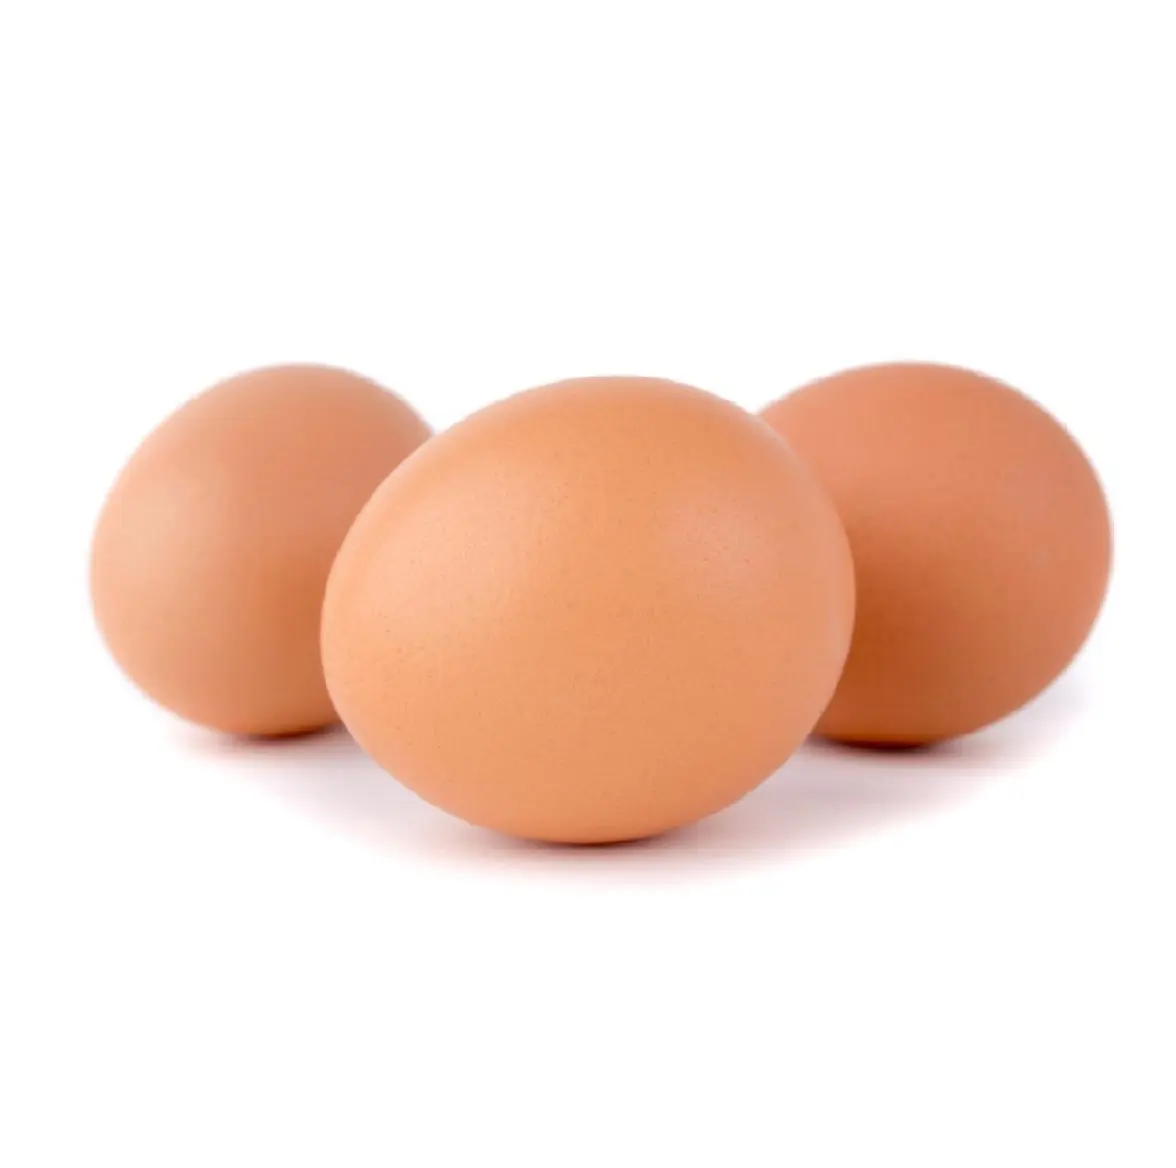 Œufs de poulet Offre Spéciale, œufs d'autruche, œufs de table frais des Pays-Bas Offre d'œufs de poulet frais de ferme bruns et blancs-